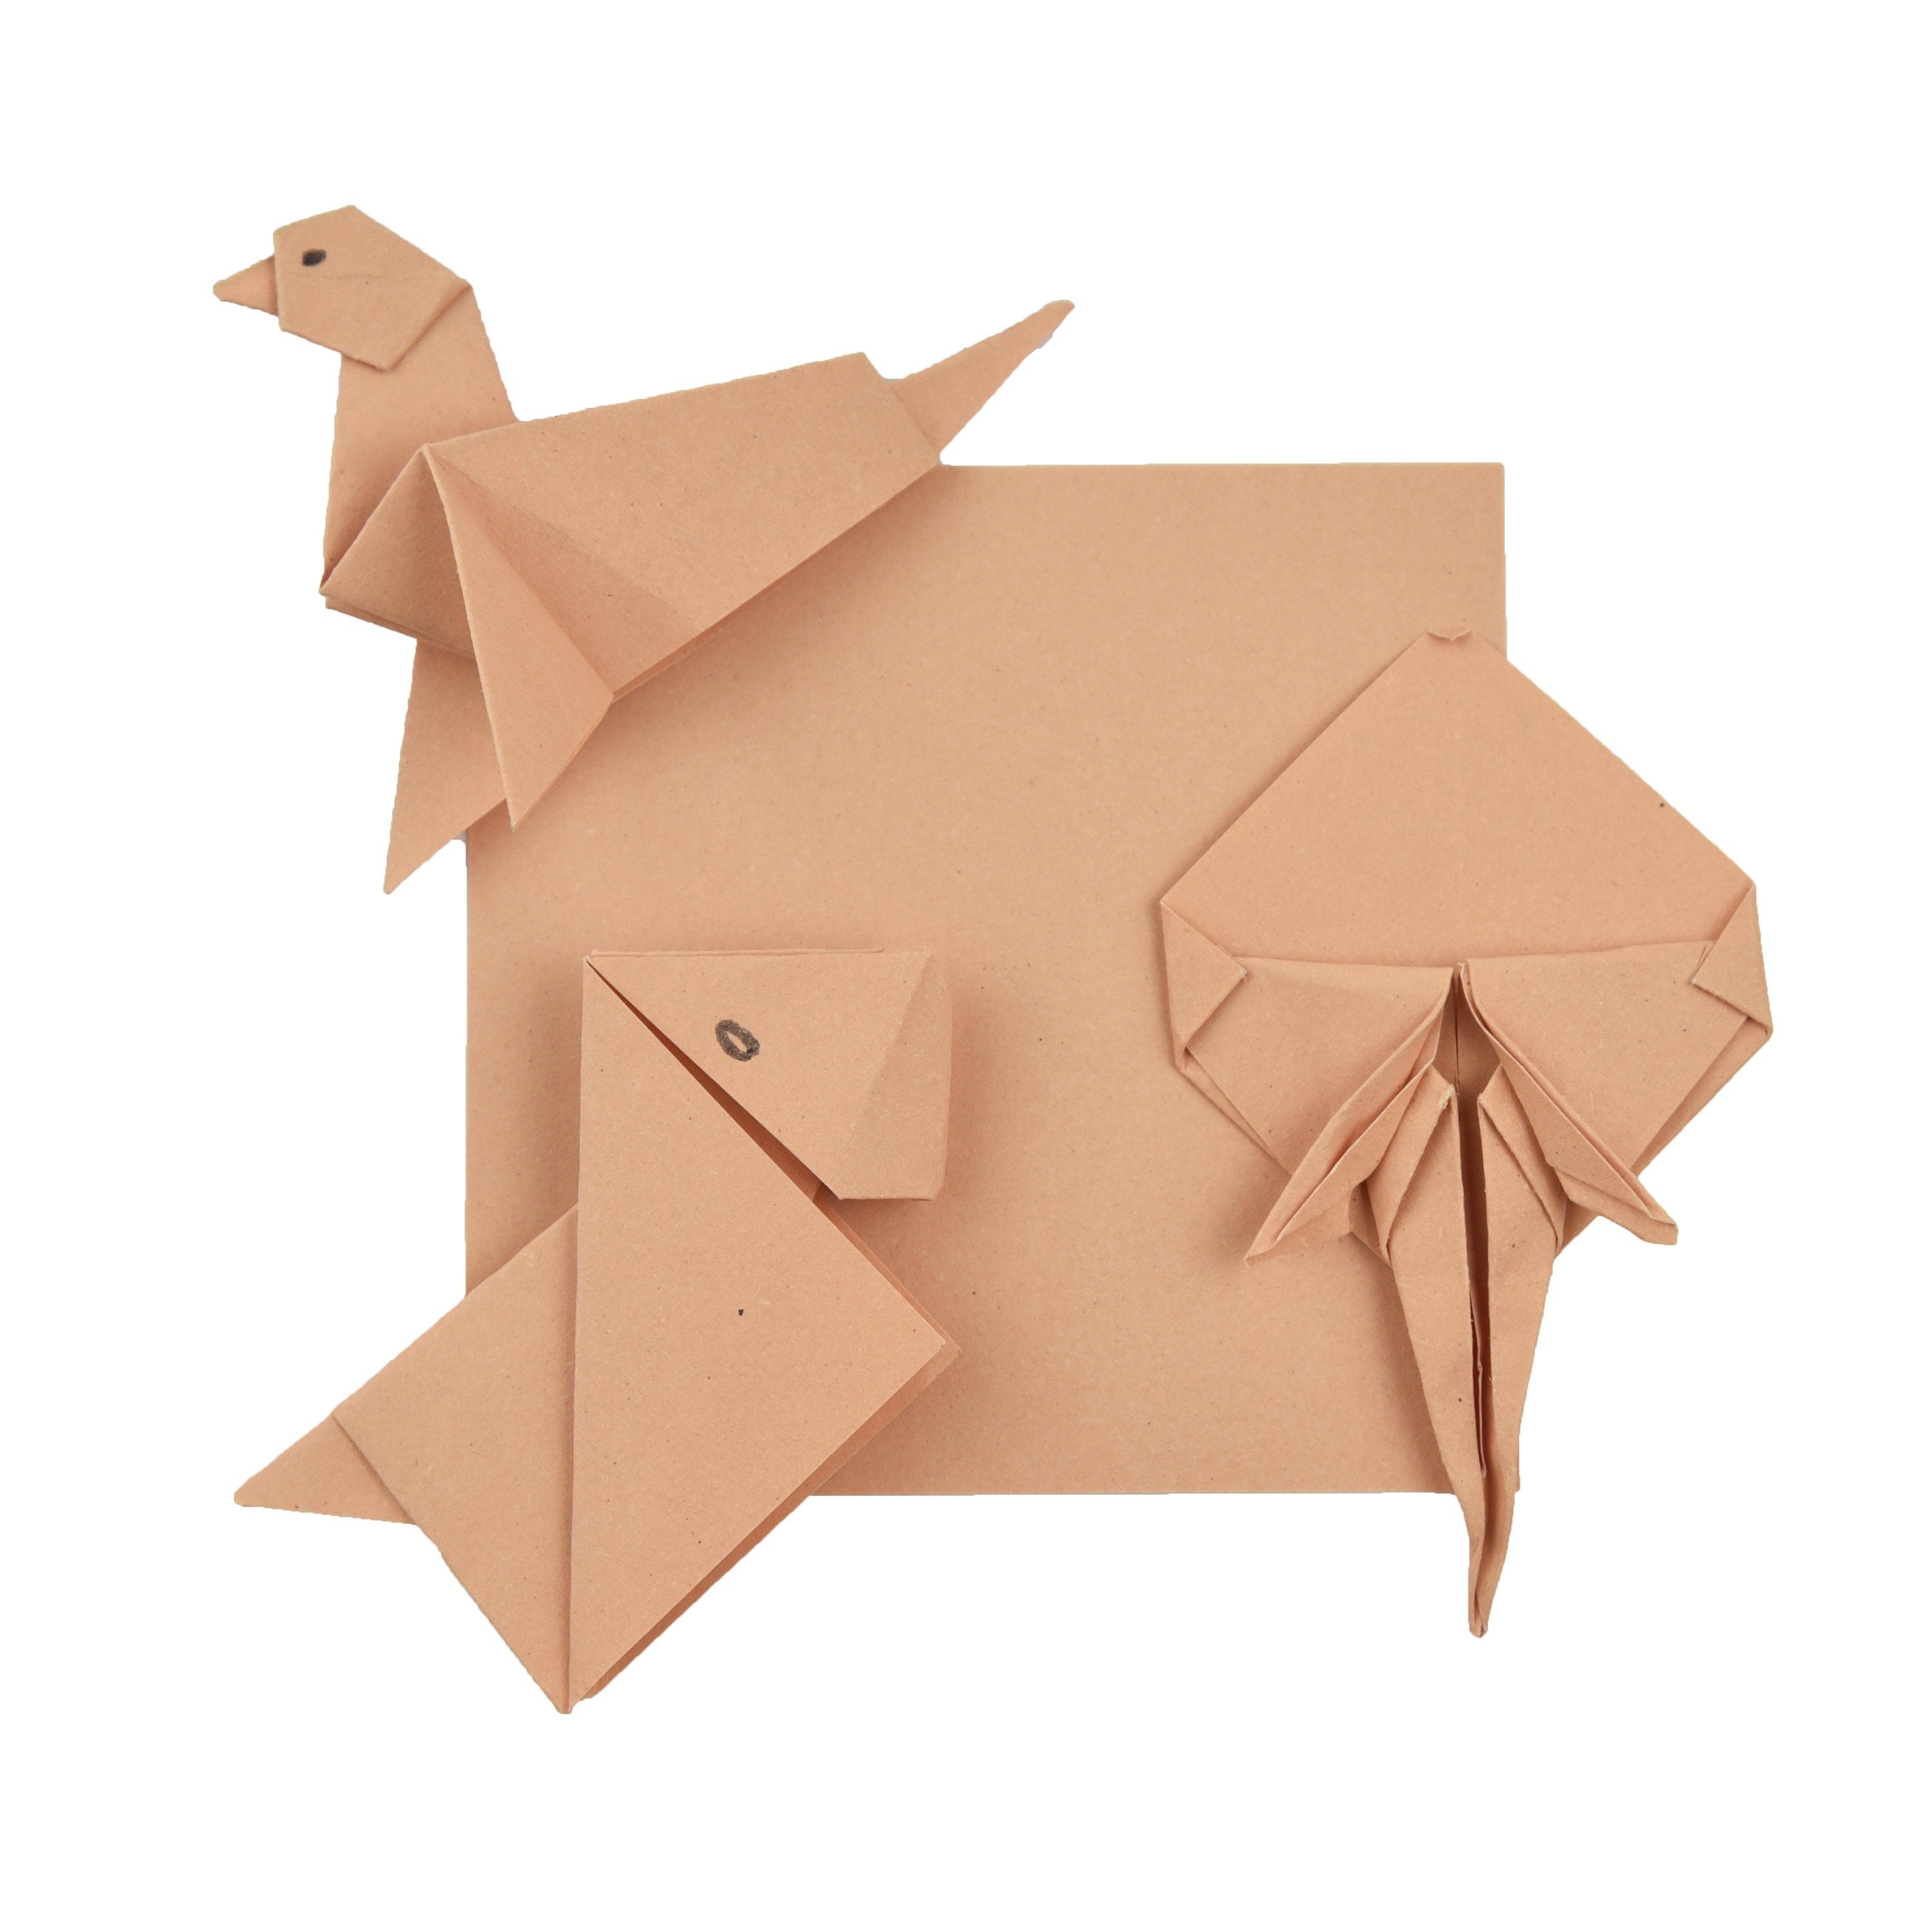 100 hojas de papel base para origami - 6x6 pulgadas - Paquete de papel cuadrado para plegado, grullas de origami y decoración - S02